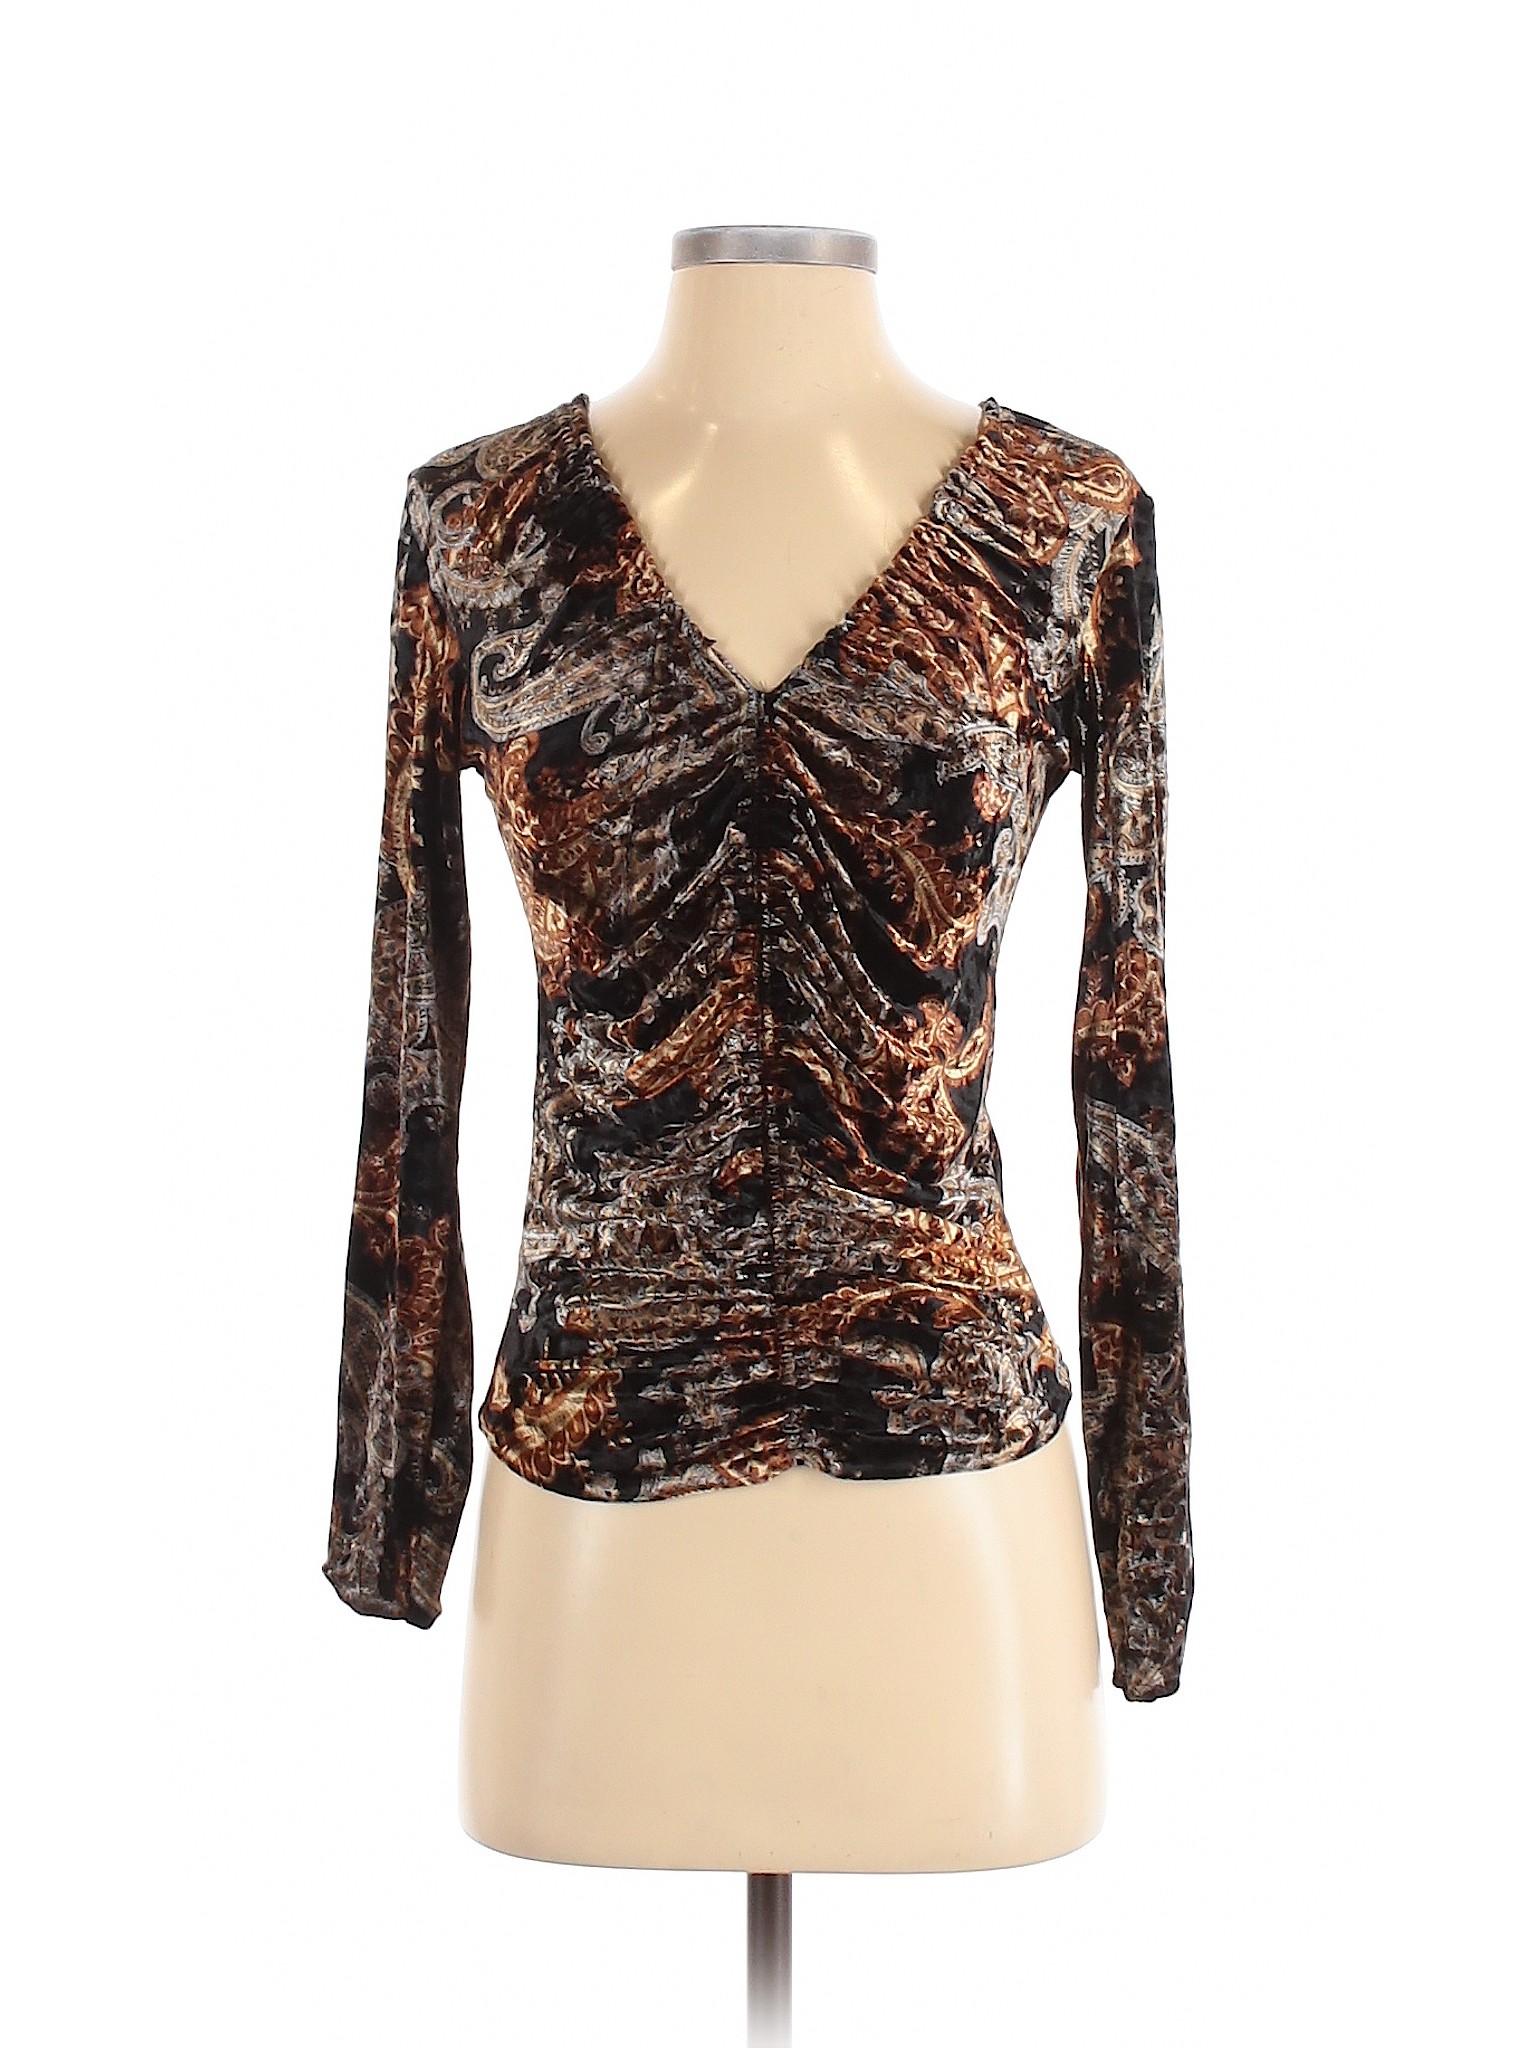 Linda Leal Women Brown Long Sleeve Top S | eBay